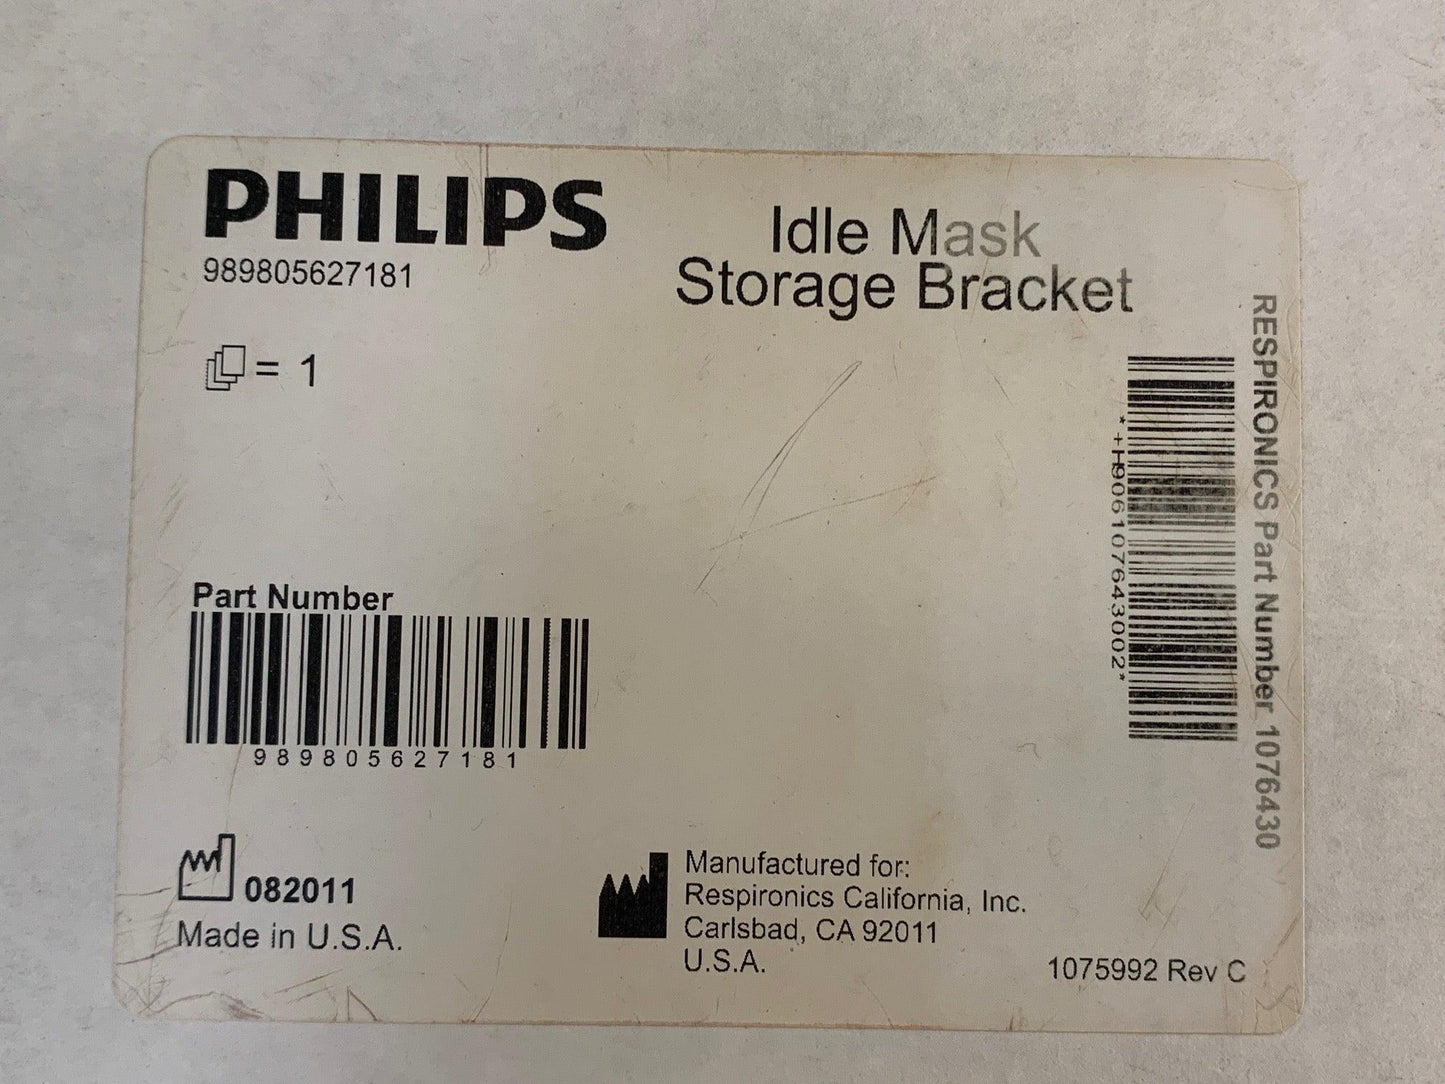 New Philips Respironics Idle Mask Storage Bracket 1076430